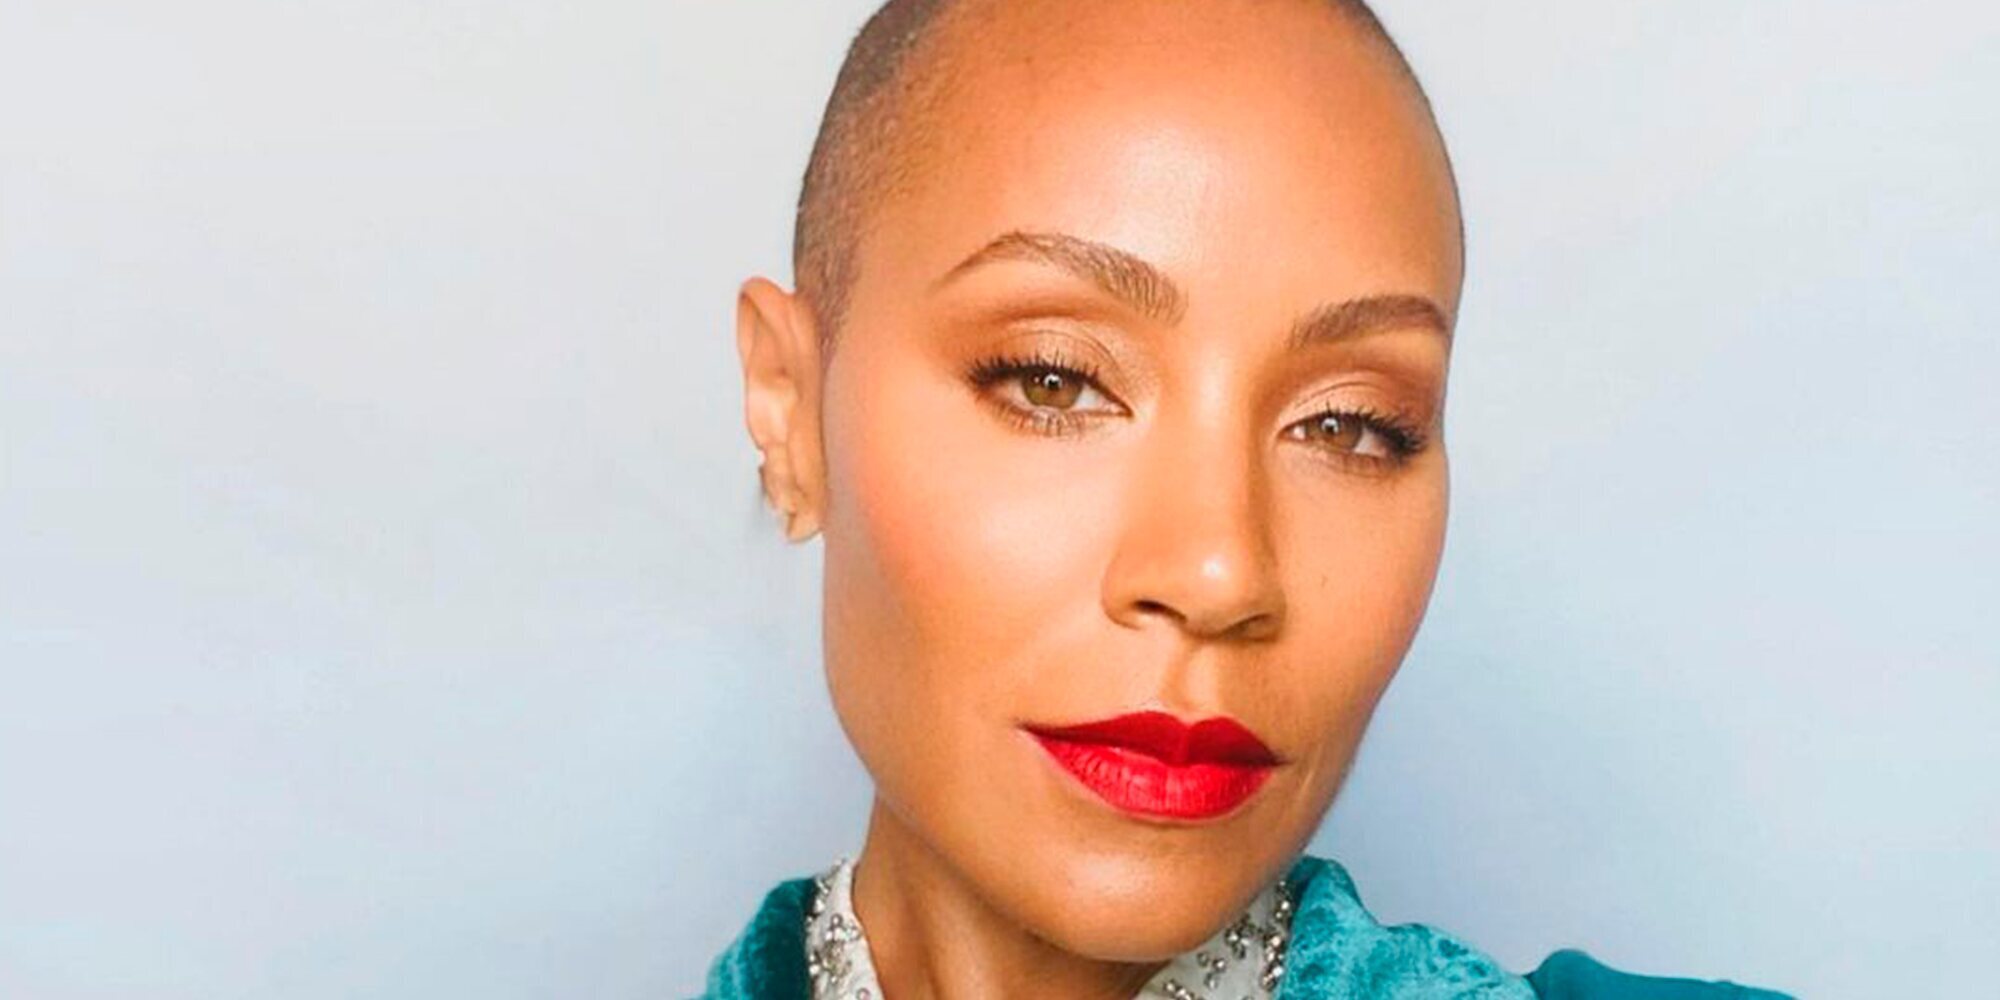 El importante alegato de Jada Pinkett sobre la alopecia femenina: "Va a ser duro, pero allá vamos"